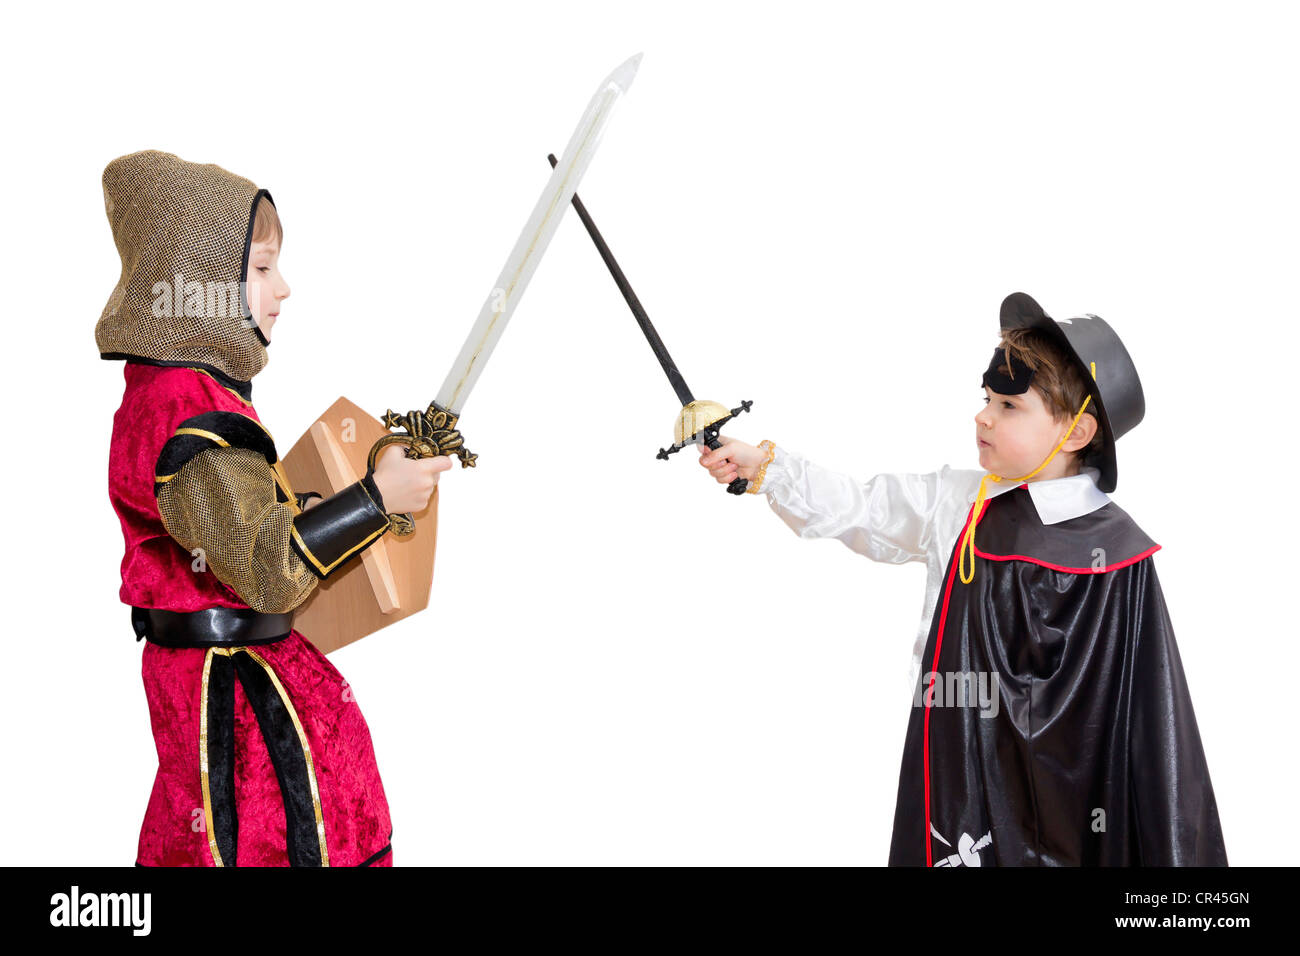 Costume de carnaval avec les garçons . Peu de combats knight avec emblème polonais sur le bouclier et très mystérieuse Zorro. Banque D'Images